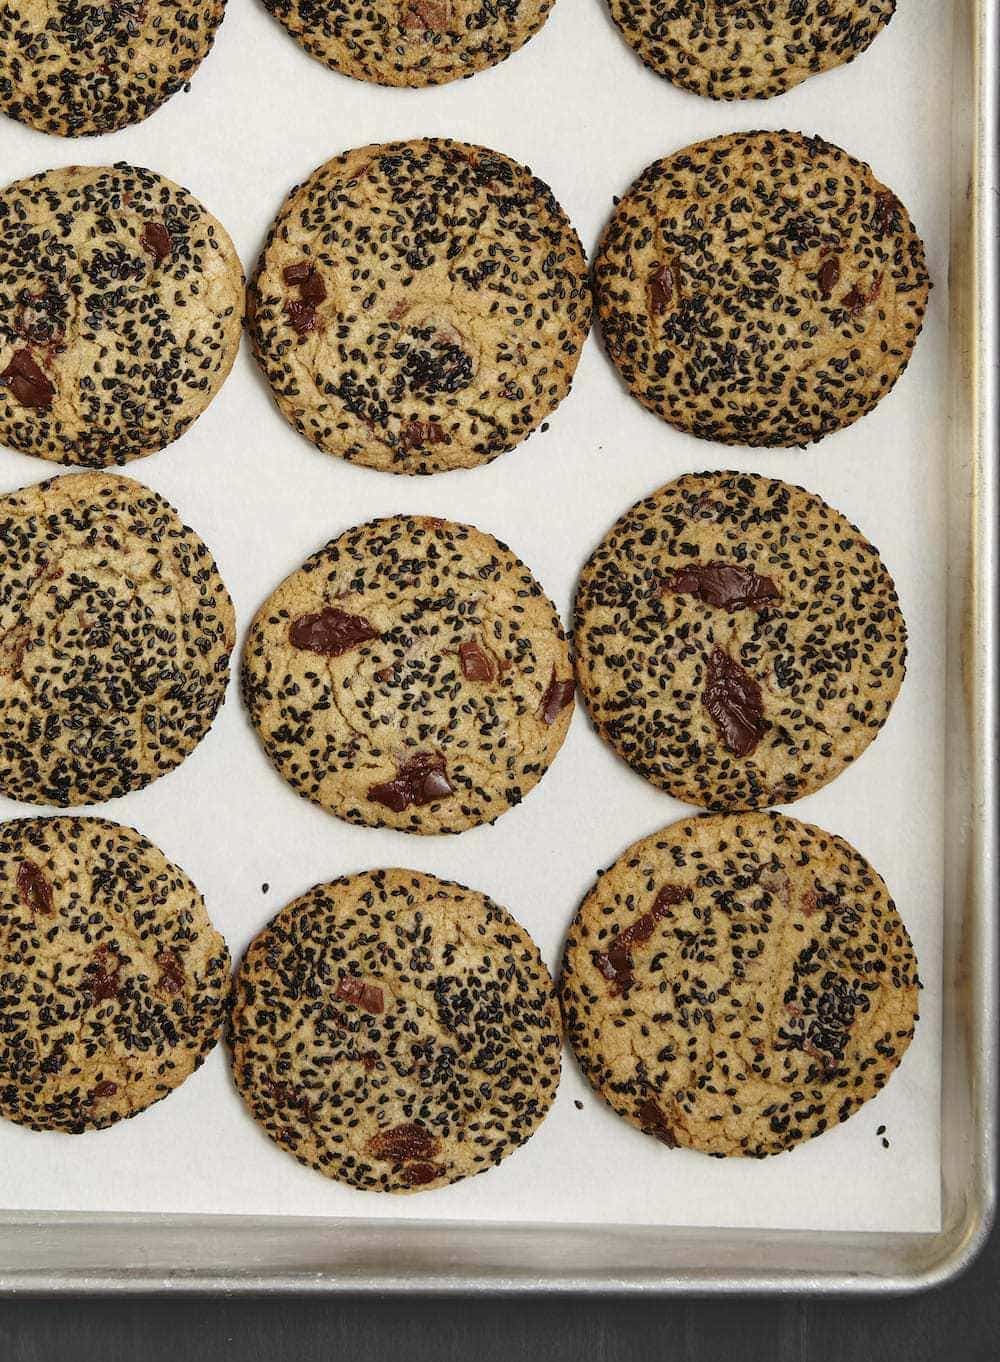 Baked Black Sesame Cookies in pan